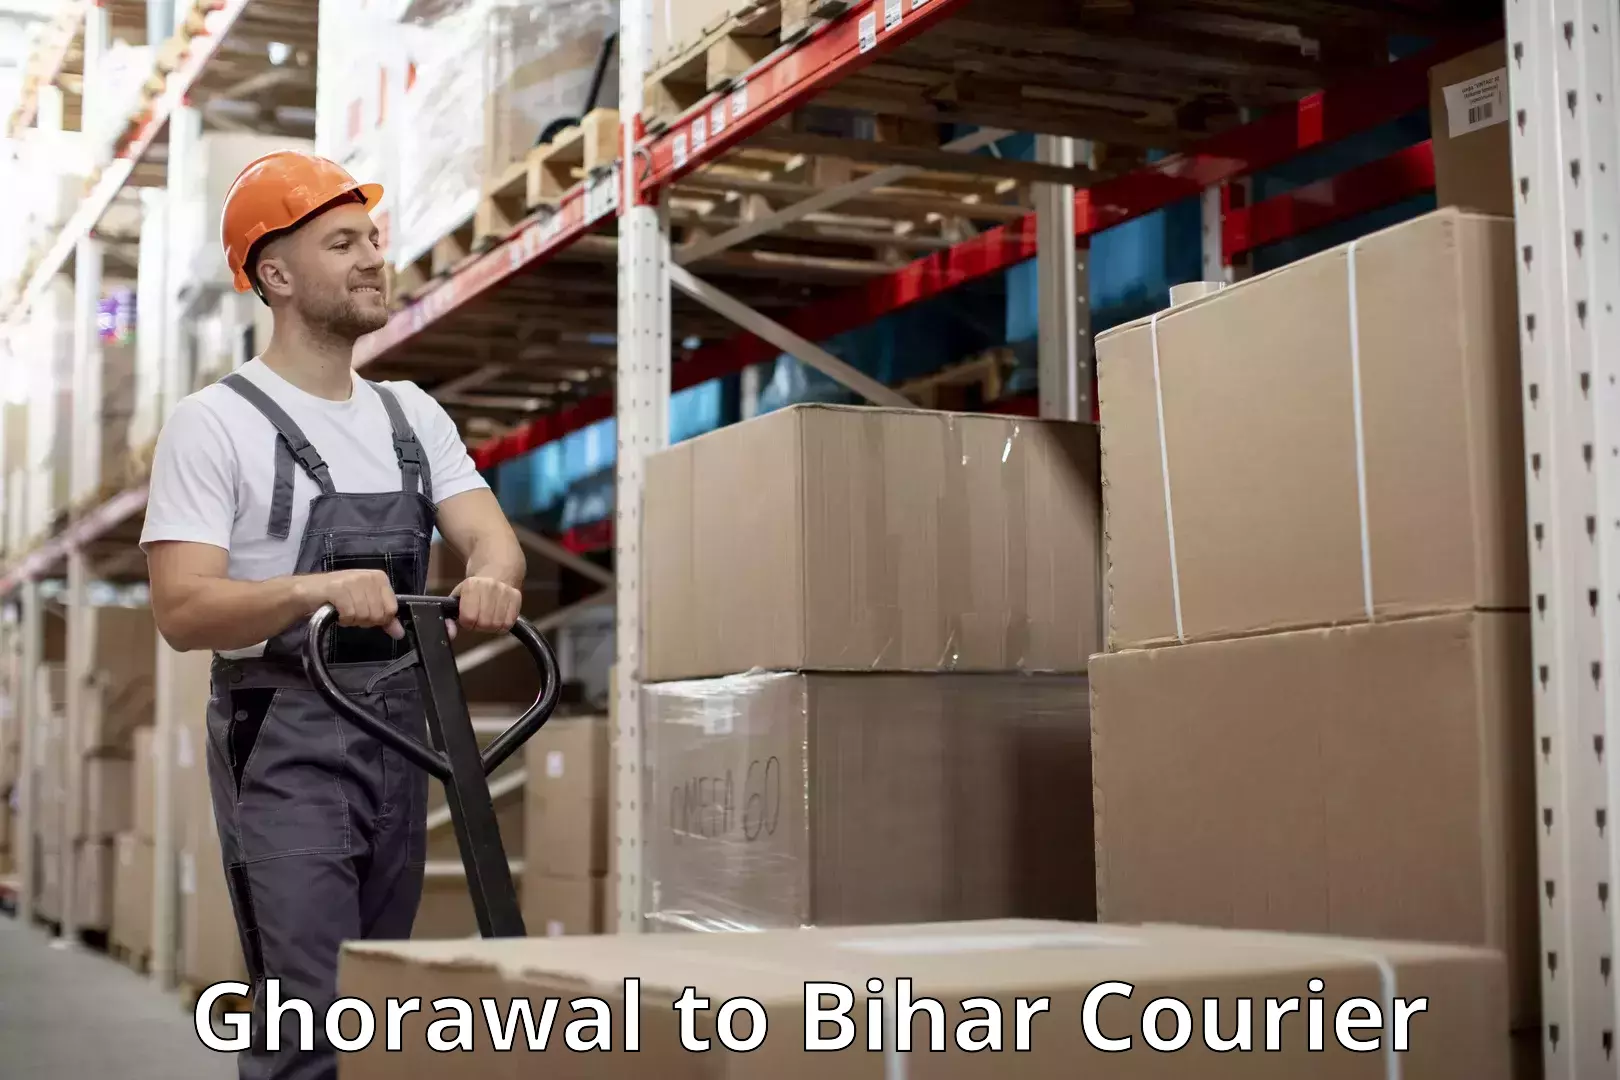 Baggage transport scheduler Ghorawal to Bihar